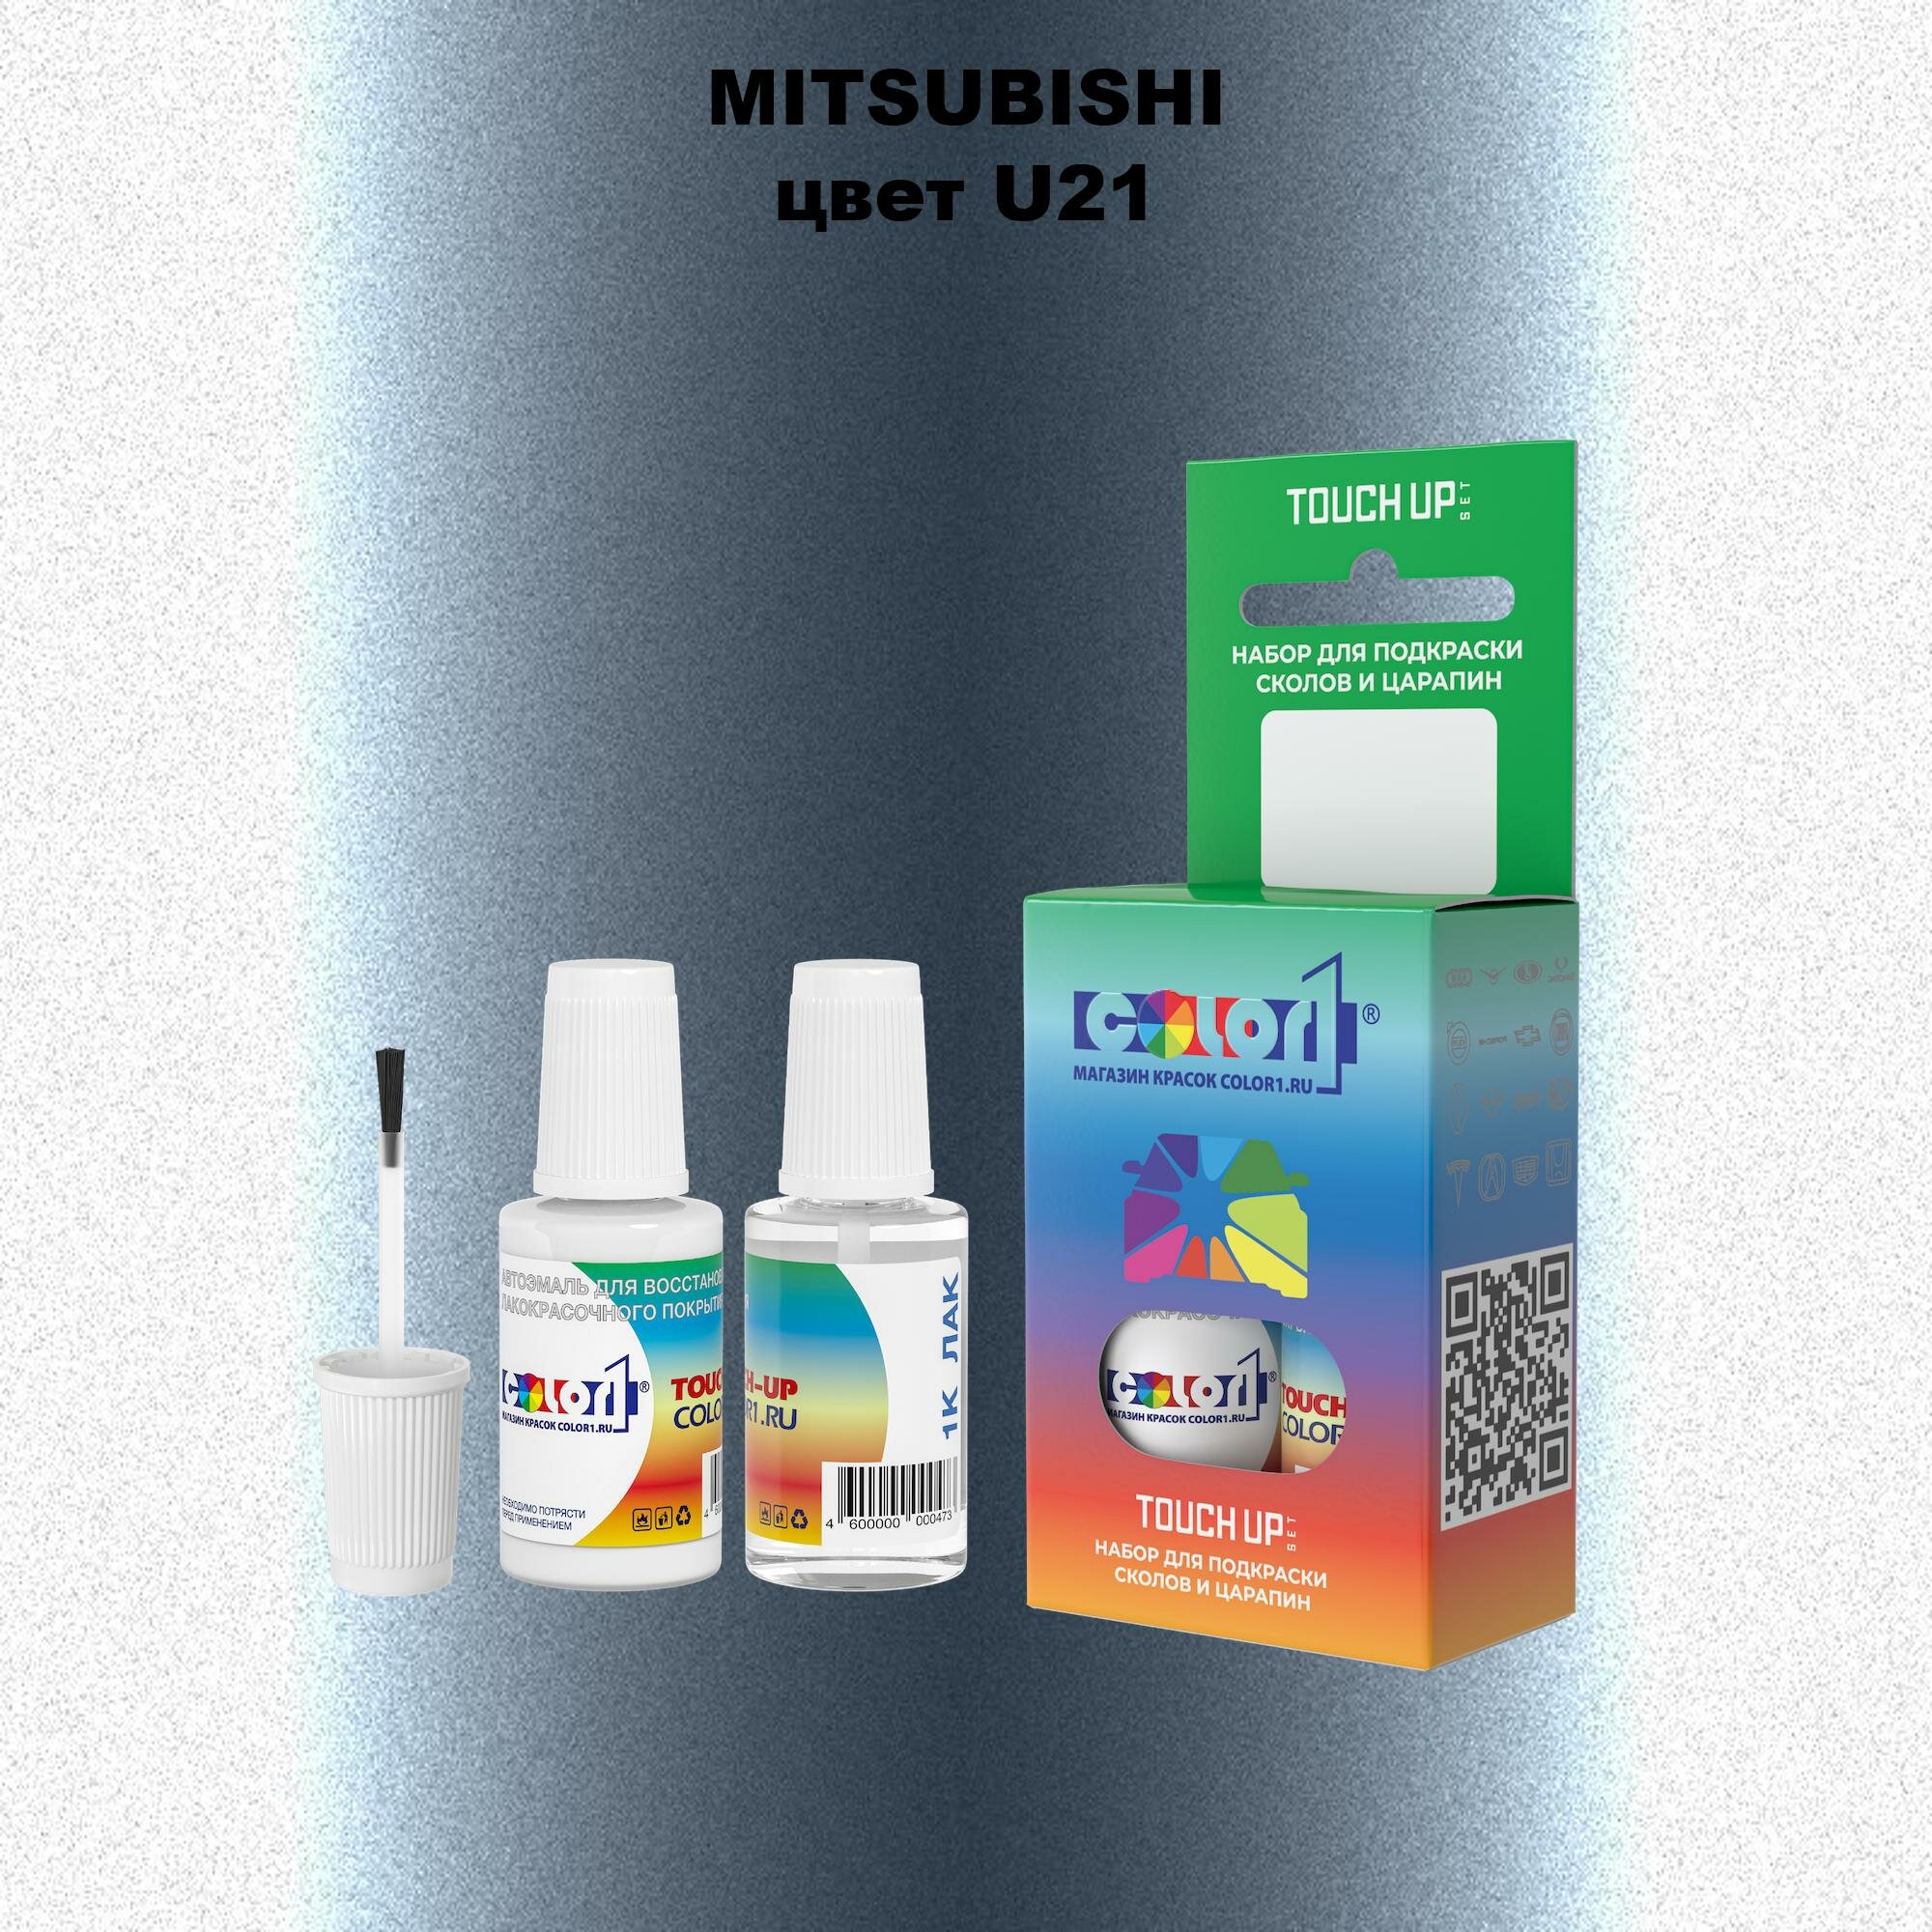 Набор из 2-х флаконов для закраски сколов (краска 20мл + лак 20мл) на автомобиле MITSUBISHI, цвет U21 - BLUISH SILVER